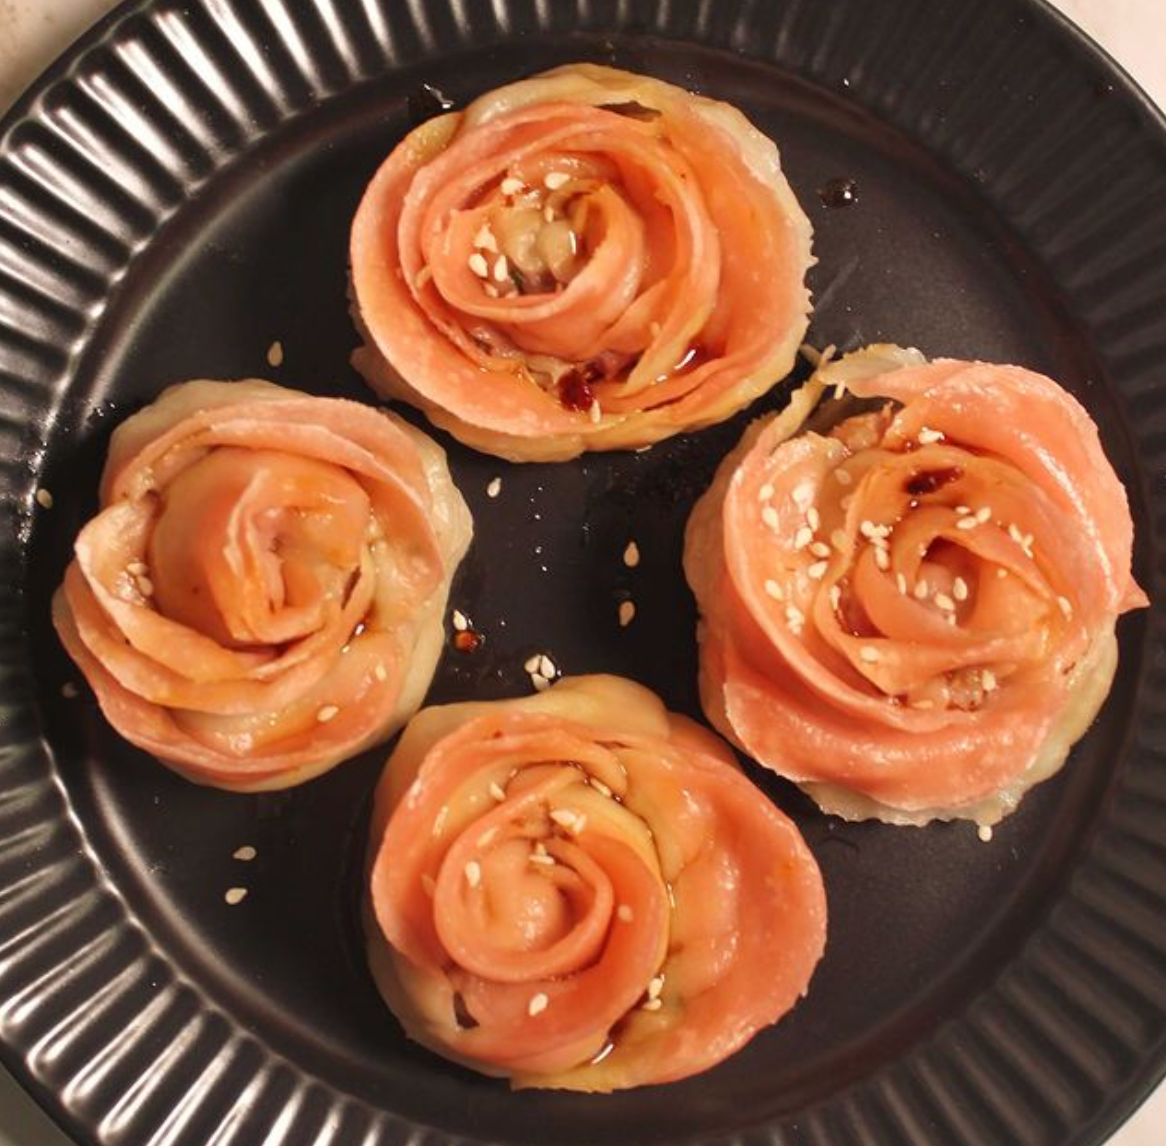 Picture of Rose dumplings